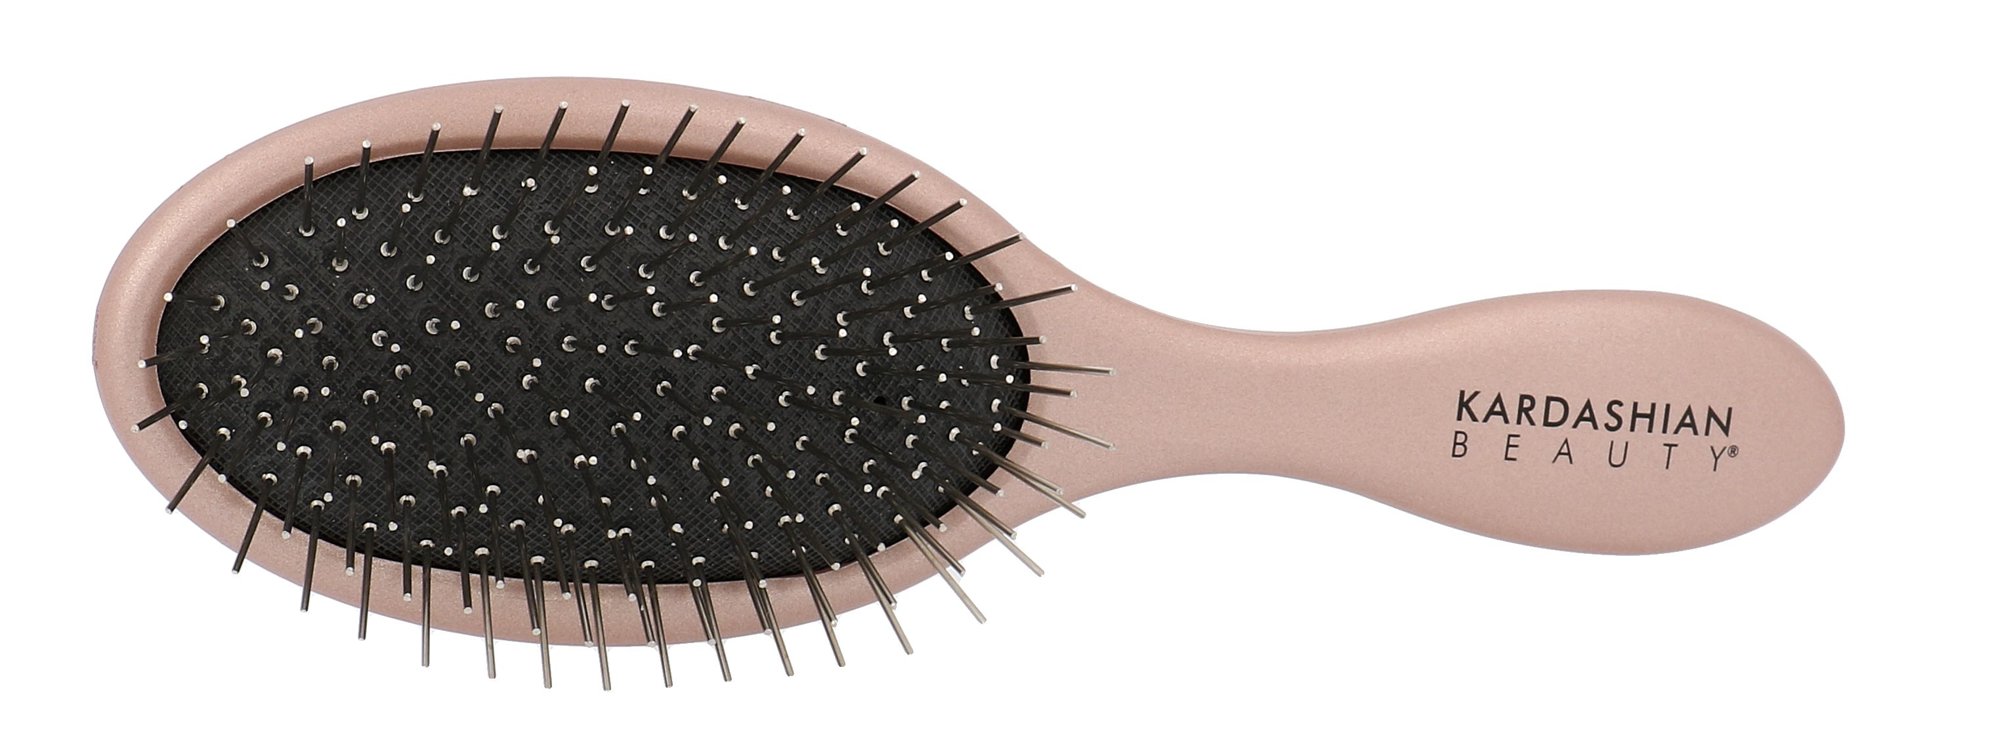 Kardashian Beauty Metal Pin Paddle Brush